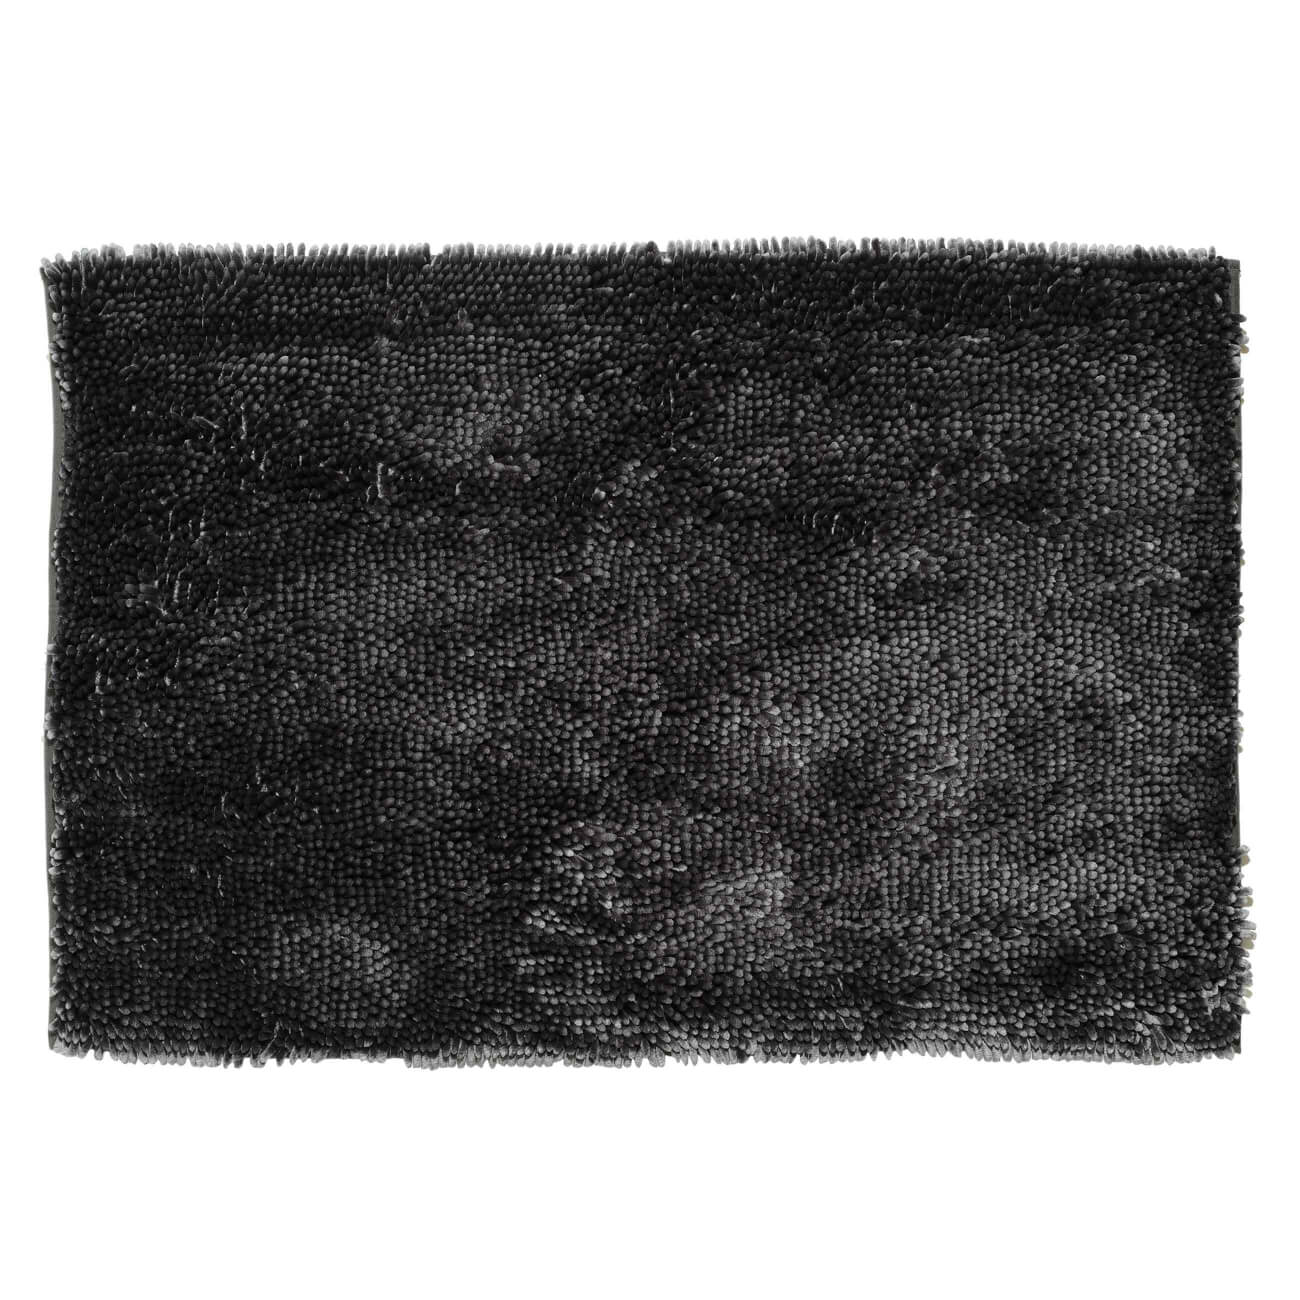 Коврик, 65х100 см, противоскользящий, полиэстер, темно-серый, Fluffy музыкальный коврик